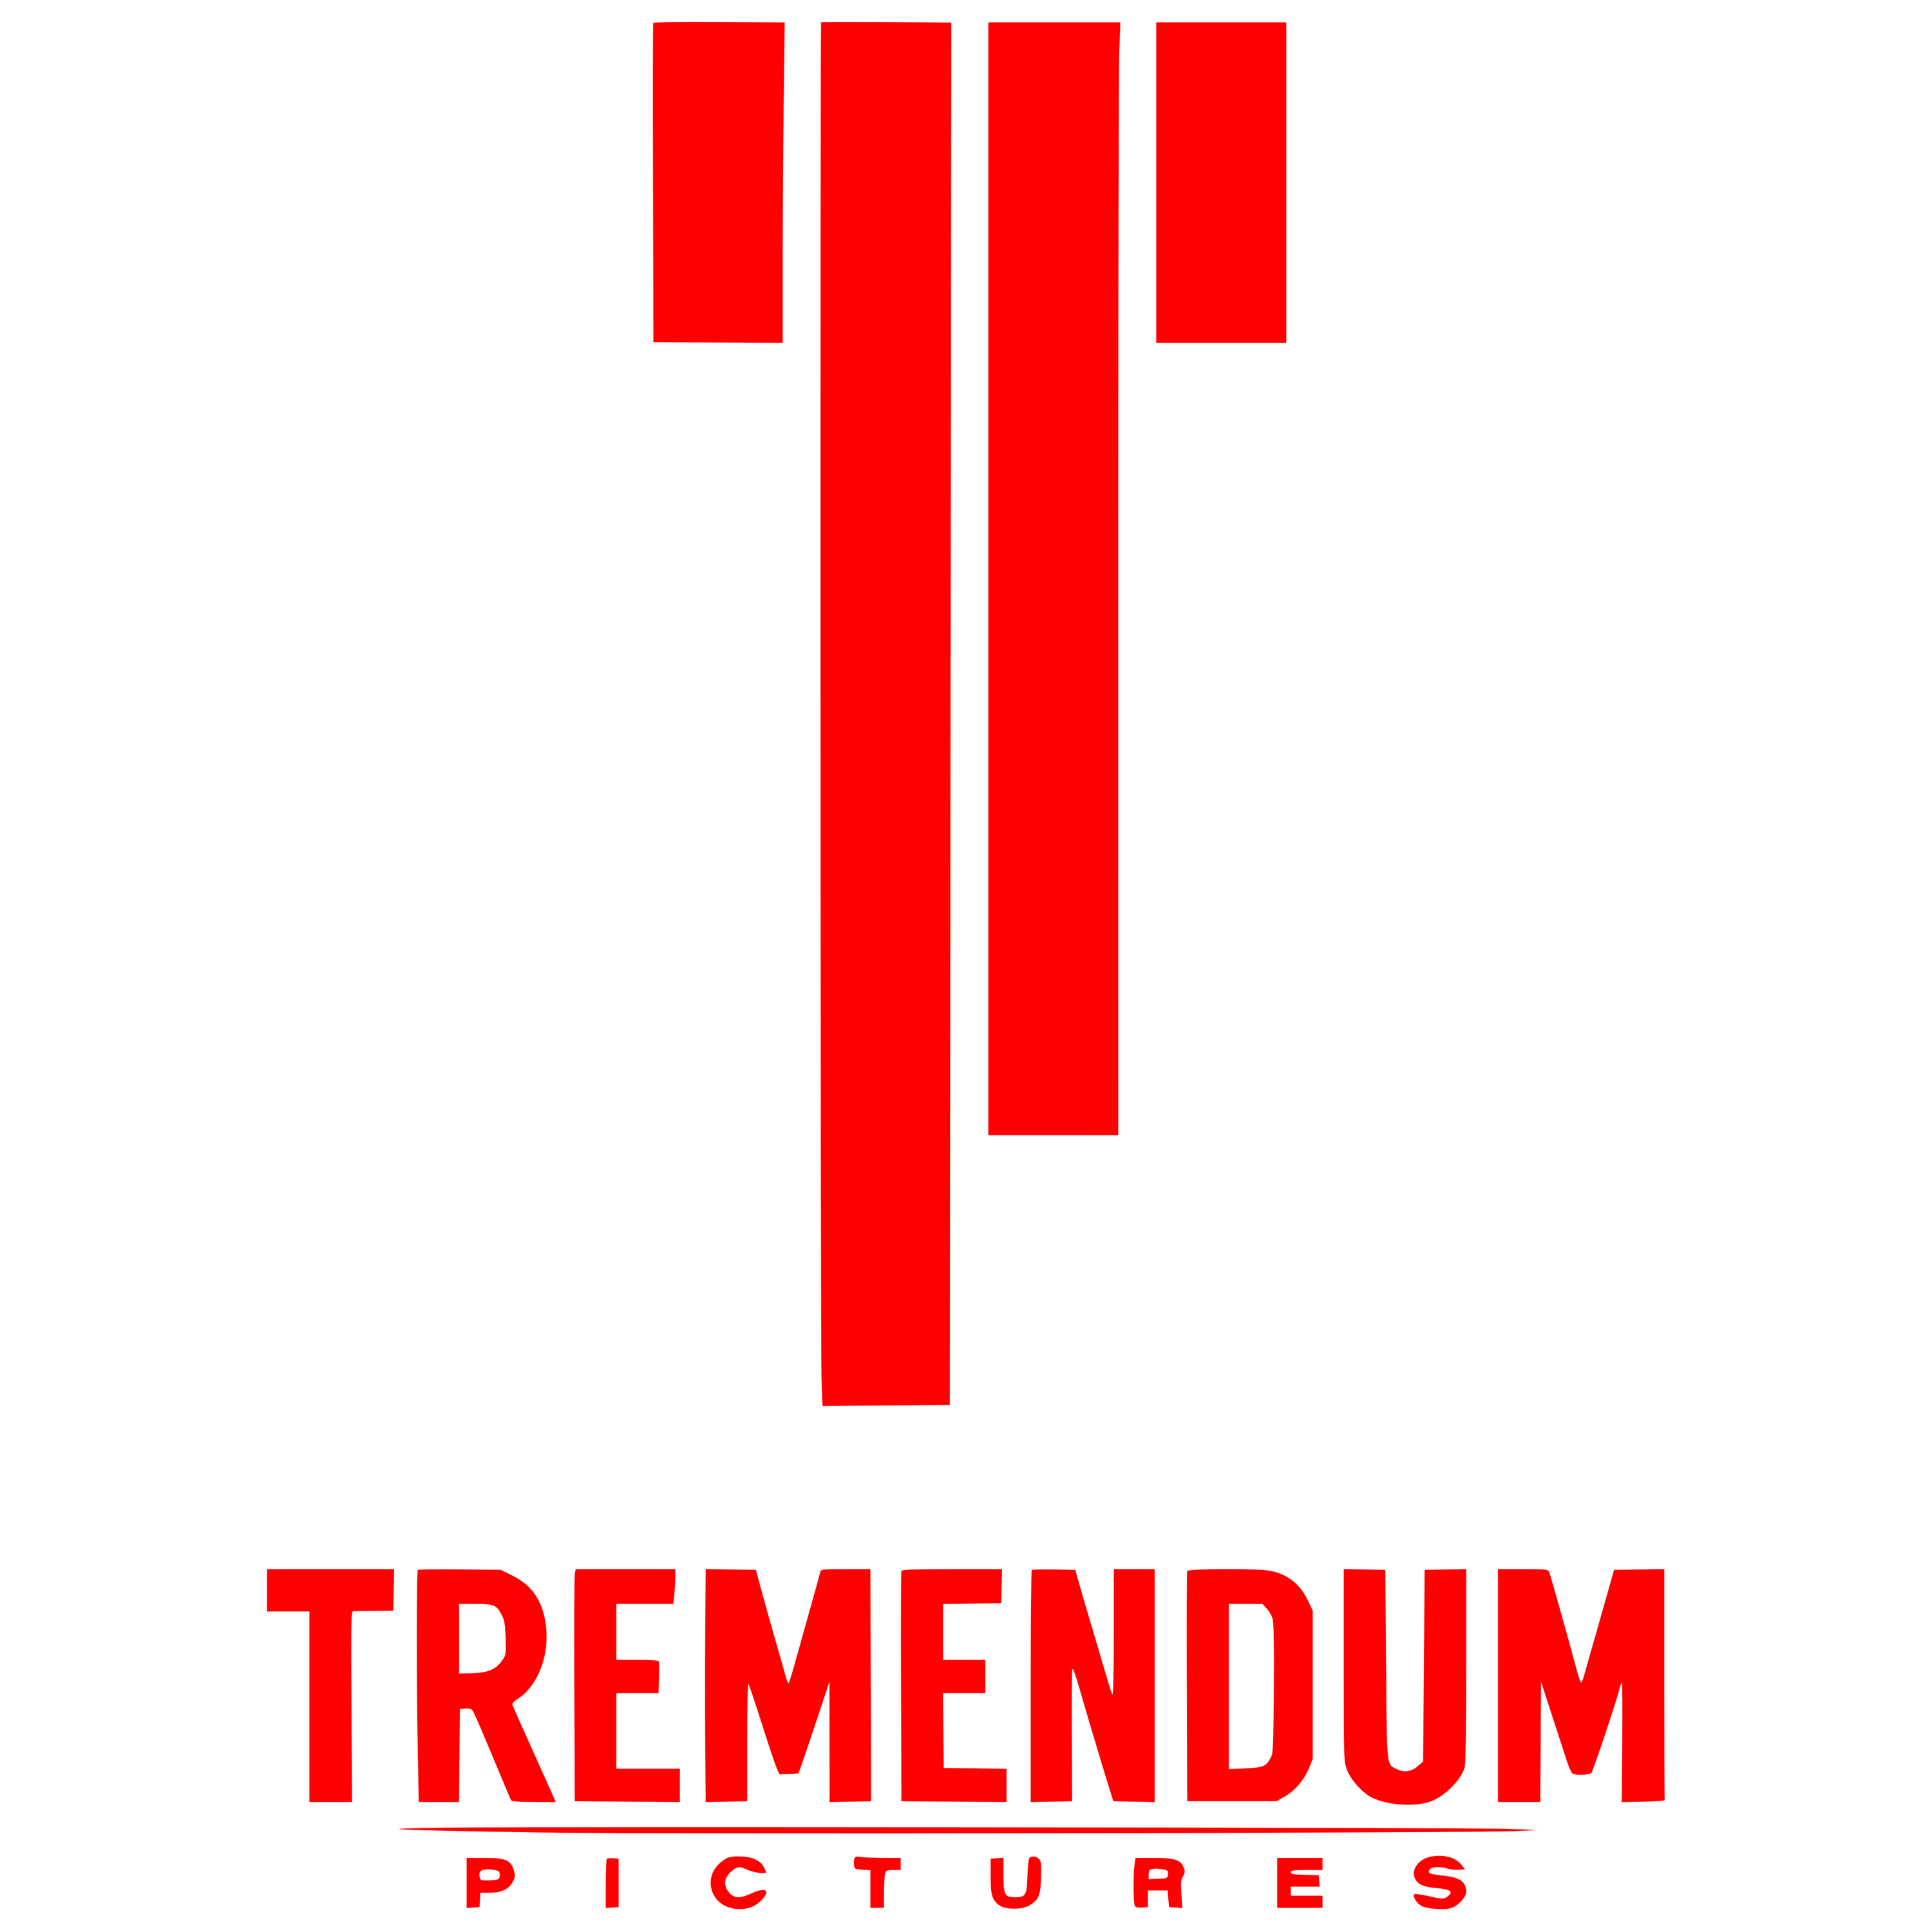 Tremendum Pictures Logo  Transparent Photo